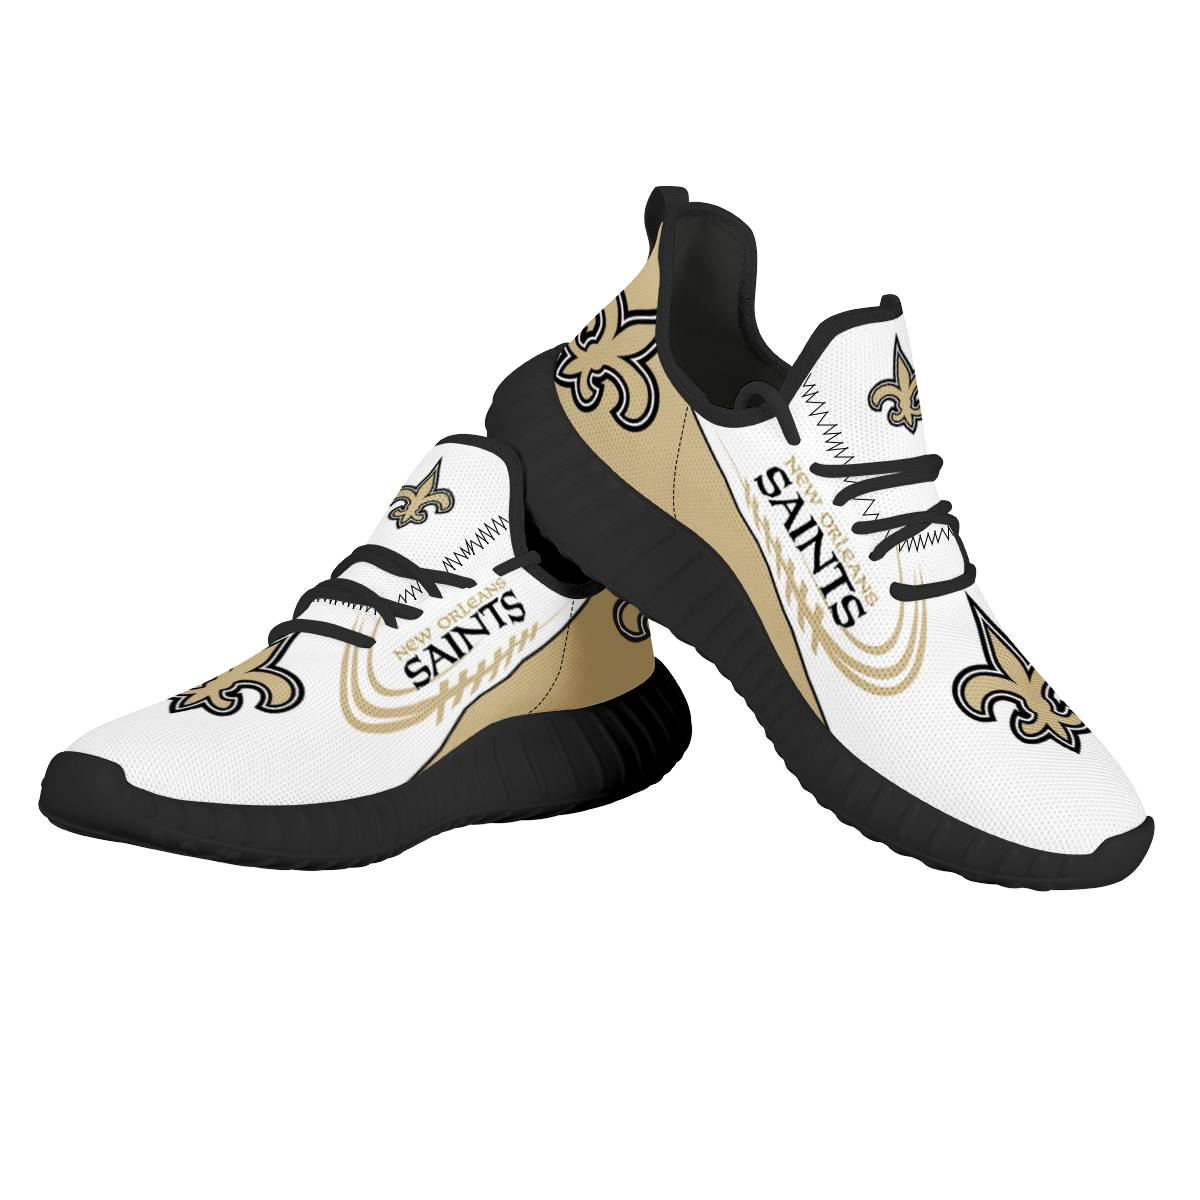 Men's NFL New Orleans Saints Mesh Knit Sneakers/Shoes 006